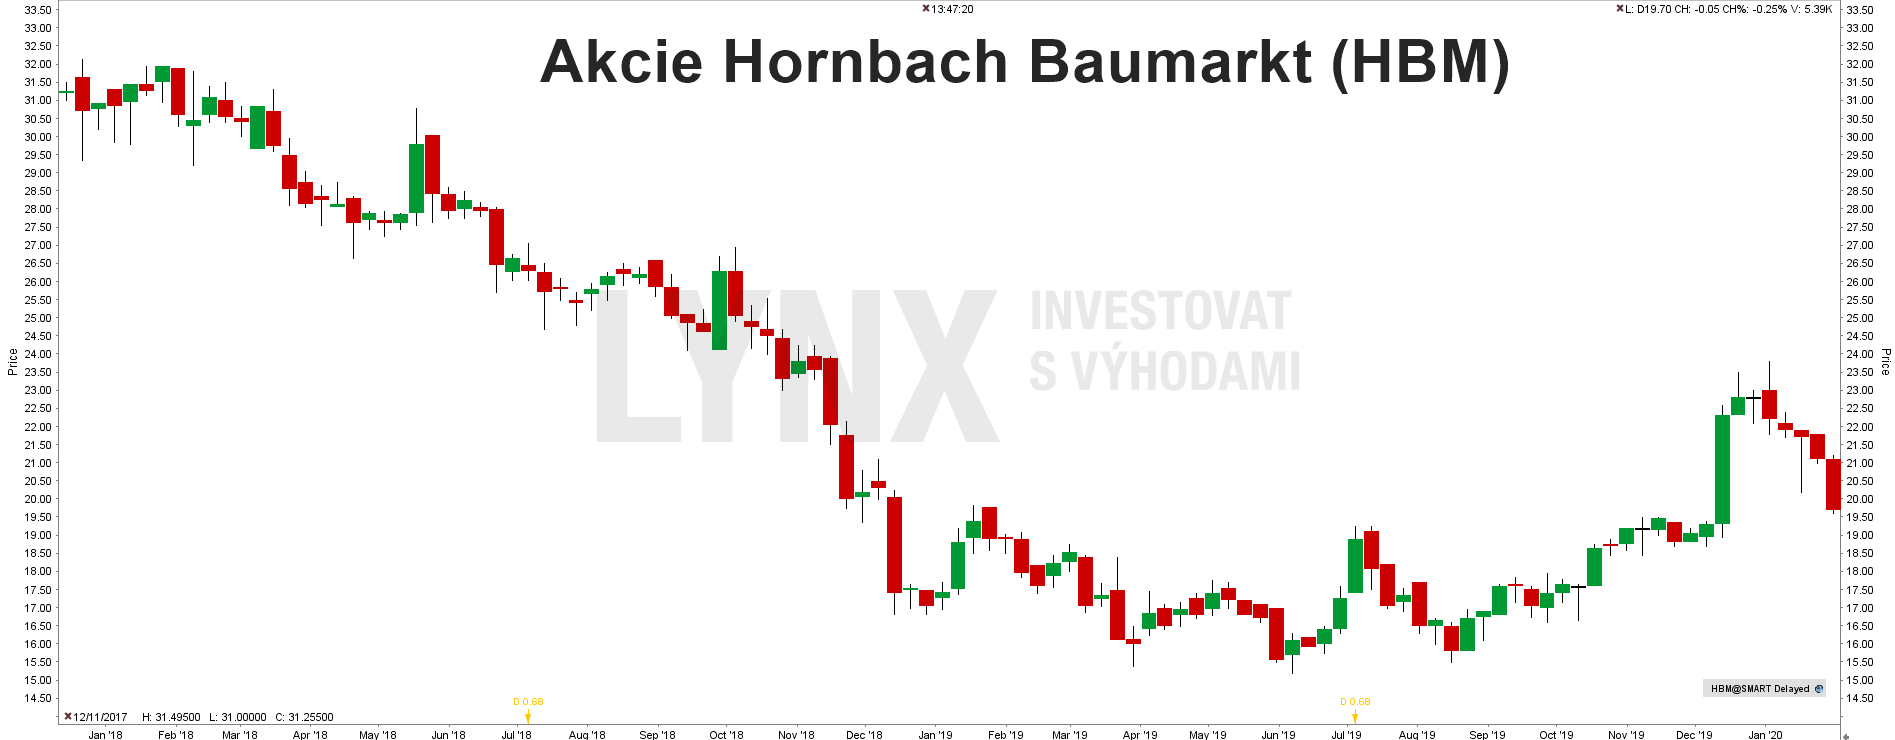 Akcie Hornbach Baumarkt